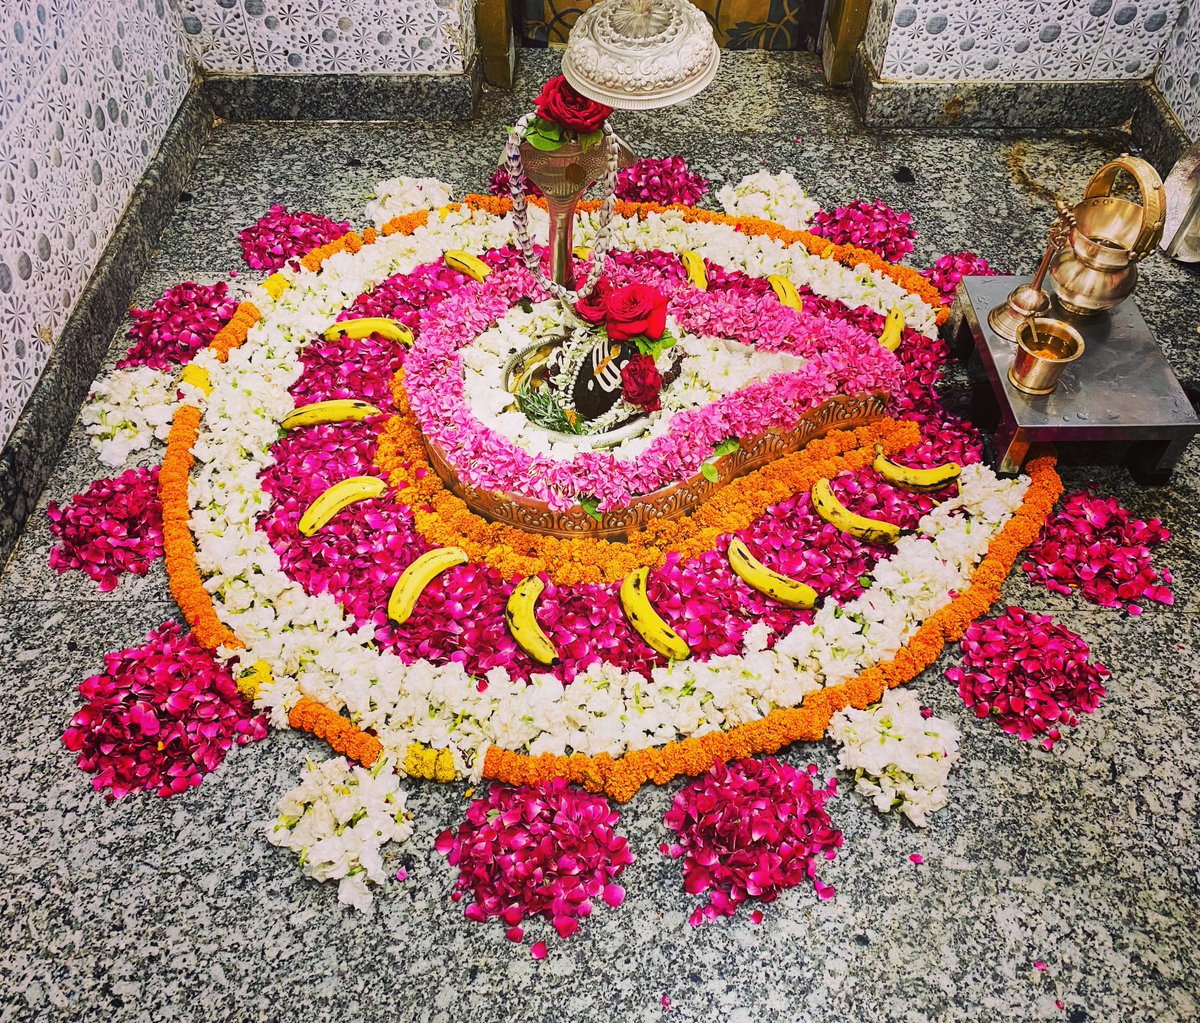 Follow Shri Neelkanth Mahadev temple account